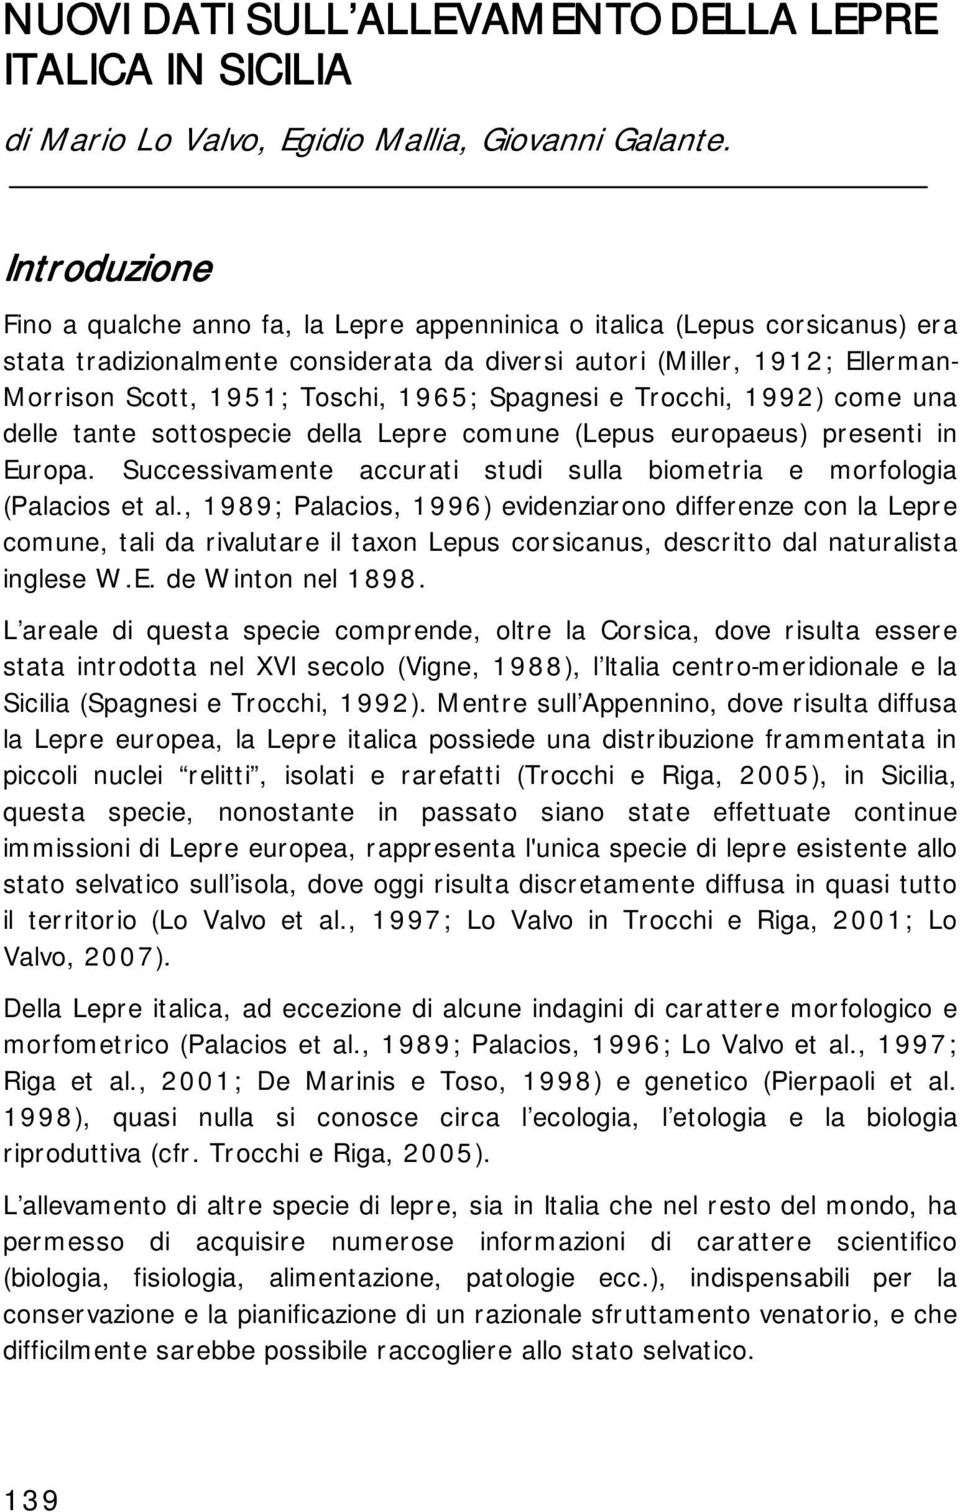 1965; Spagnesi e Trocchi, 1992) come una delle tante sottospecie della Lepre comune (Lepus europaeus) presenti in Europa. Successivamente accurati studi sulla biometria e morfologia (Palacios et al.